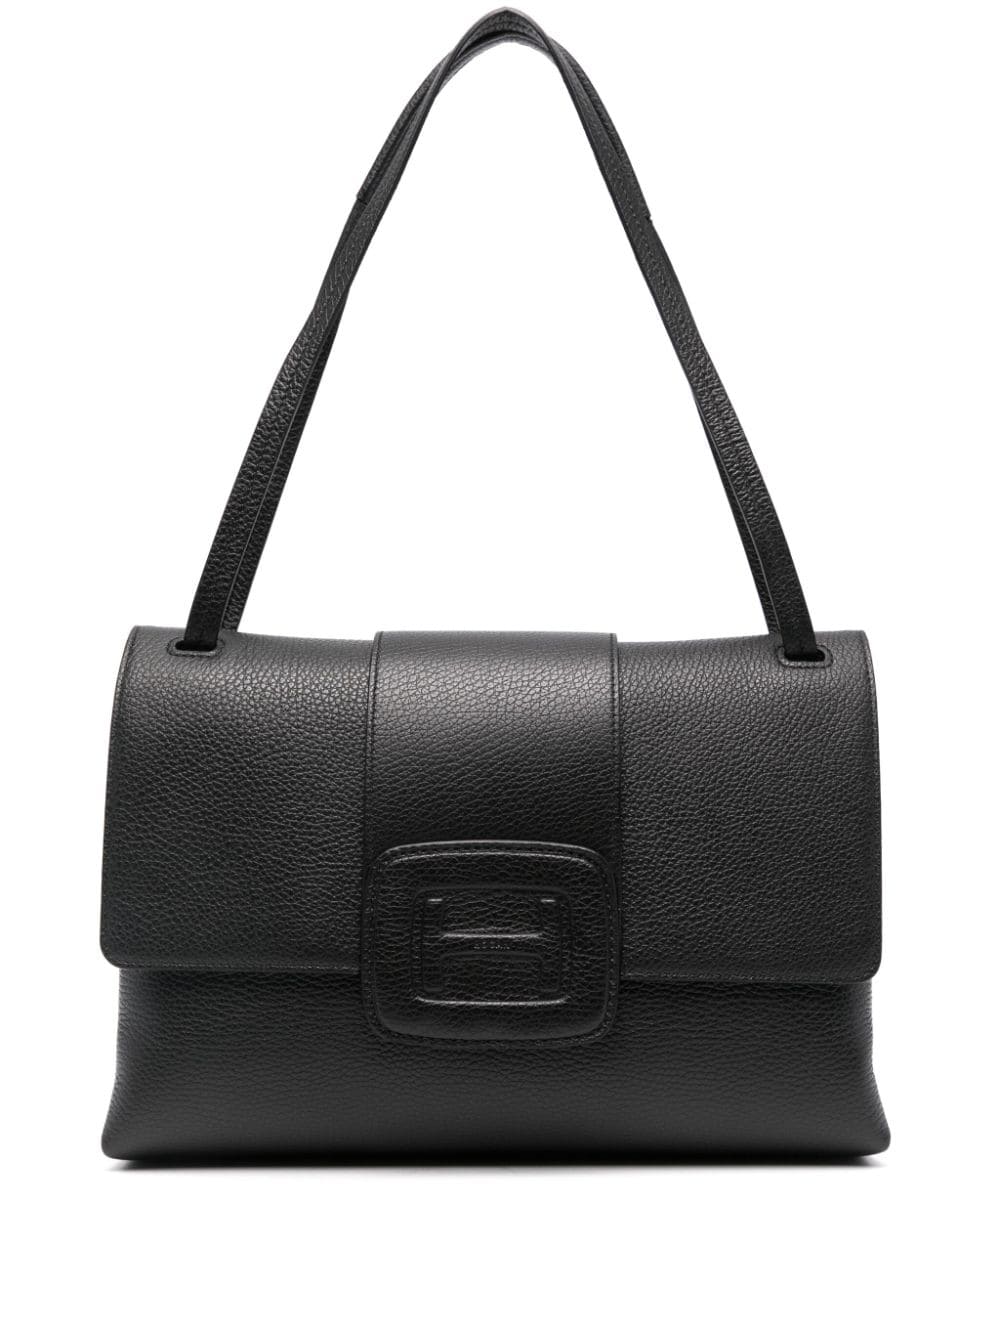 HOGAN H-Handbag MEDIUM LEATHER CROSSBODY Handbag